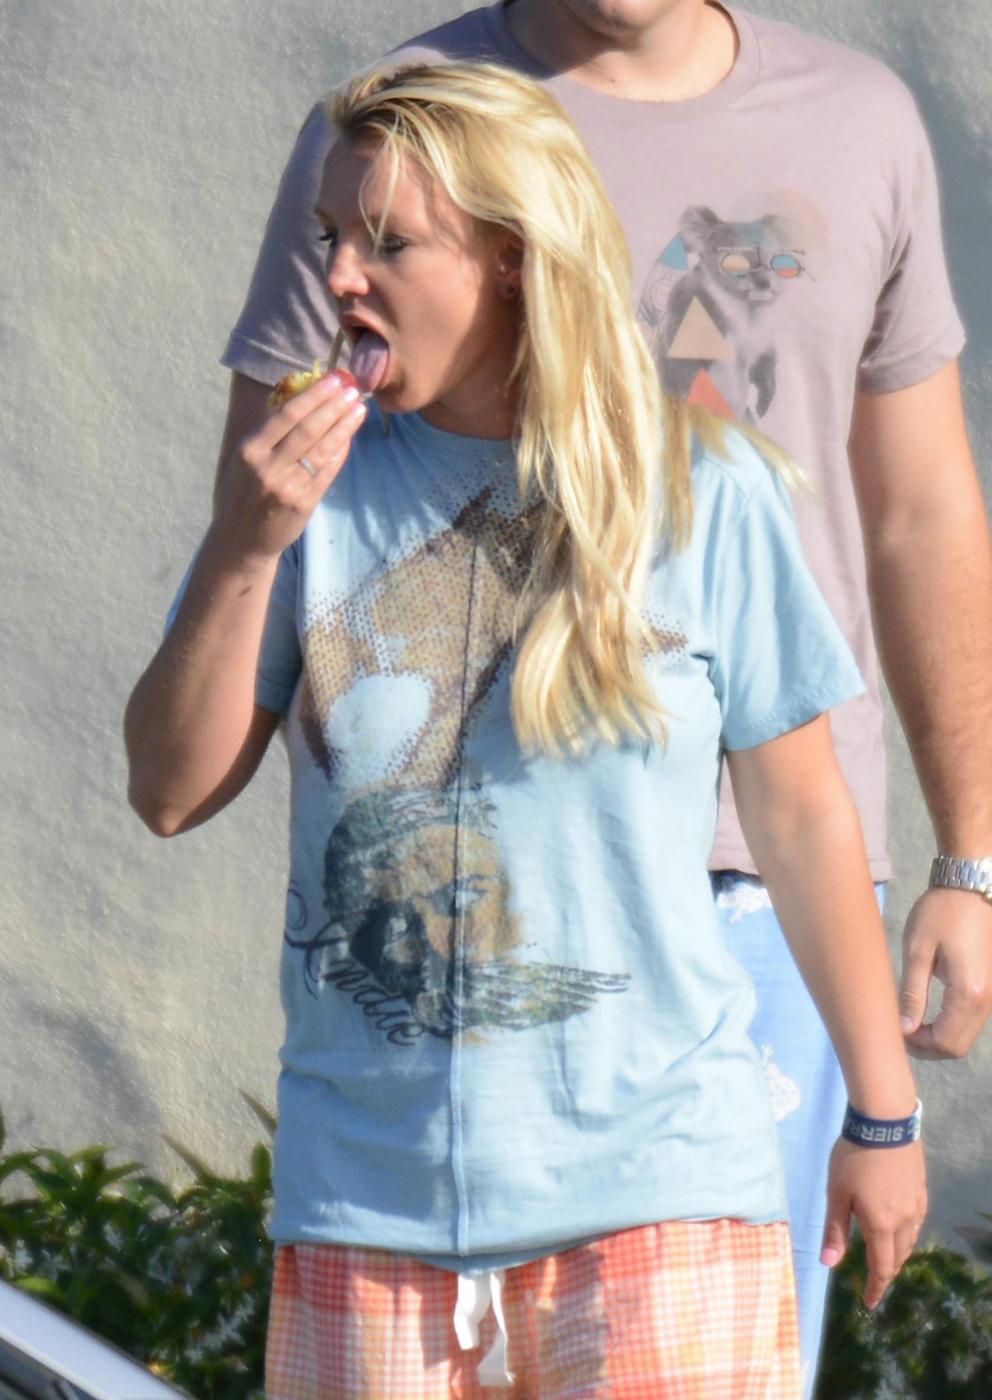 Britney Spears in vacanza con il fidanzato David Lucado01